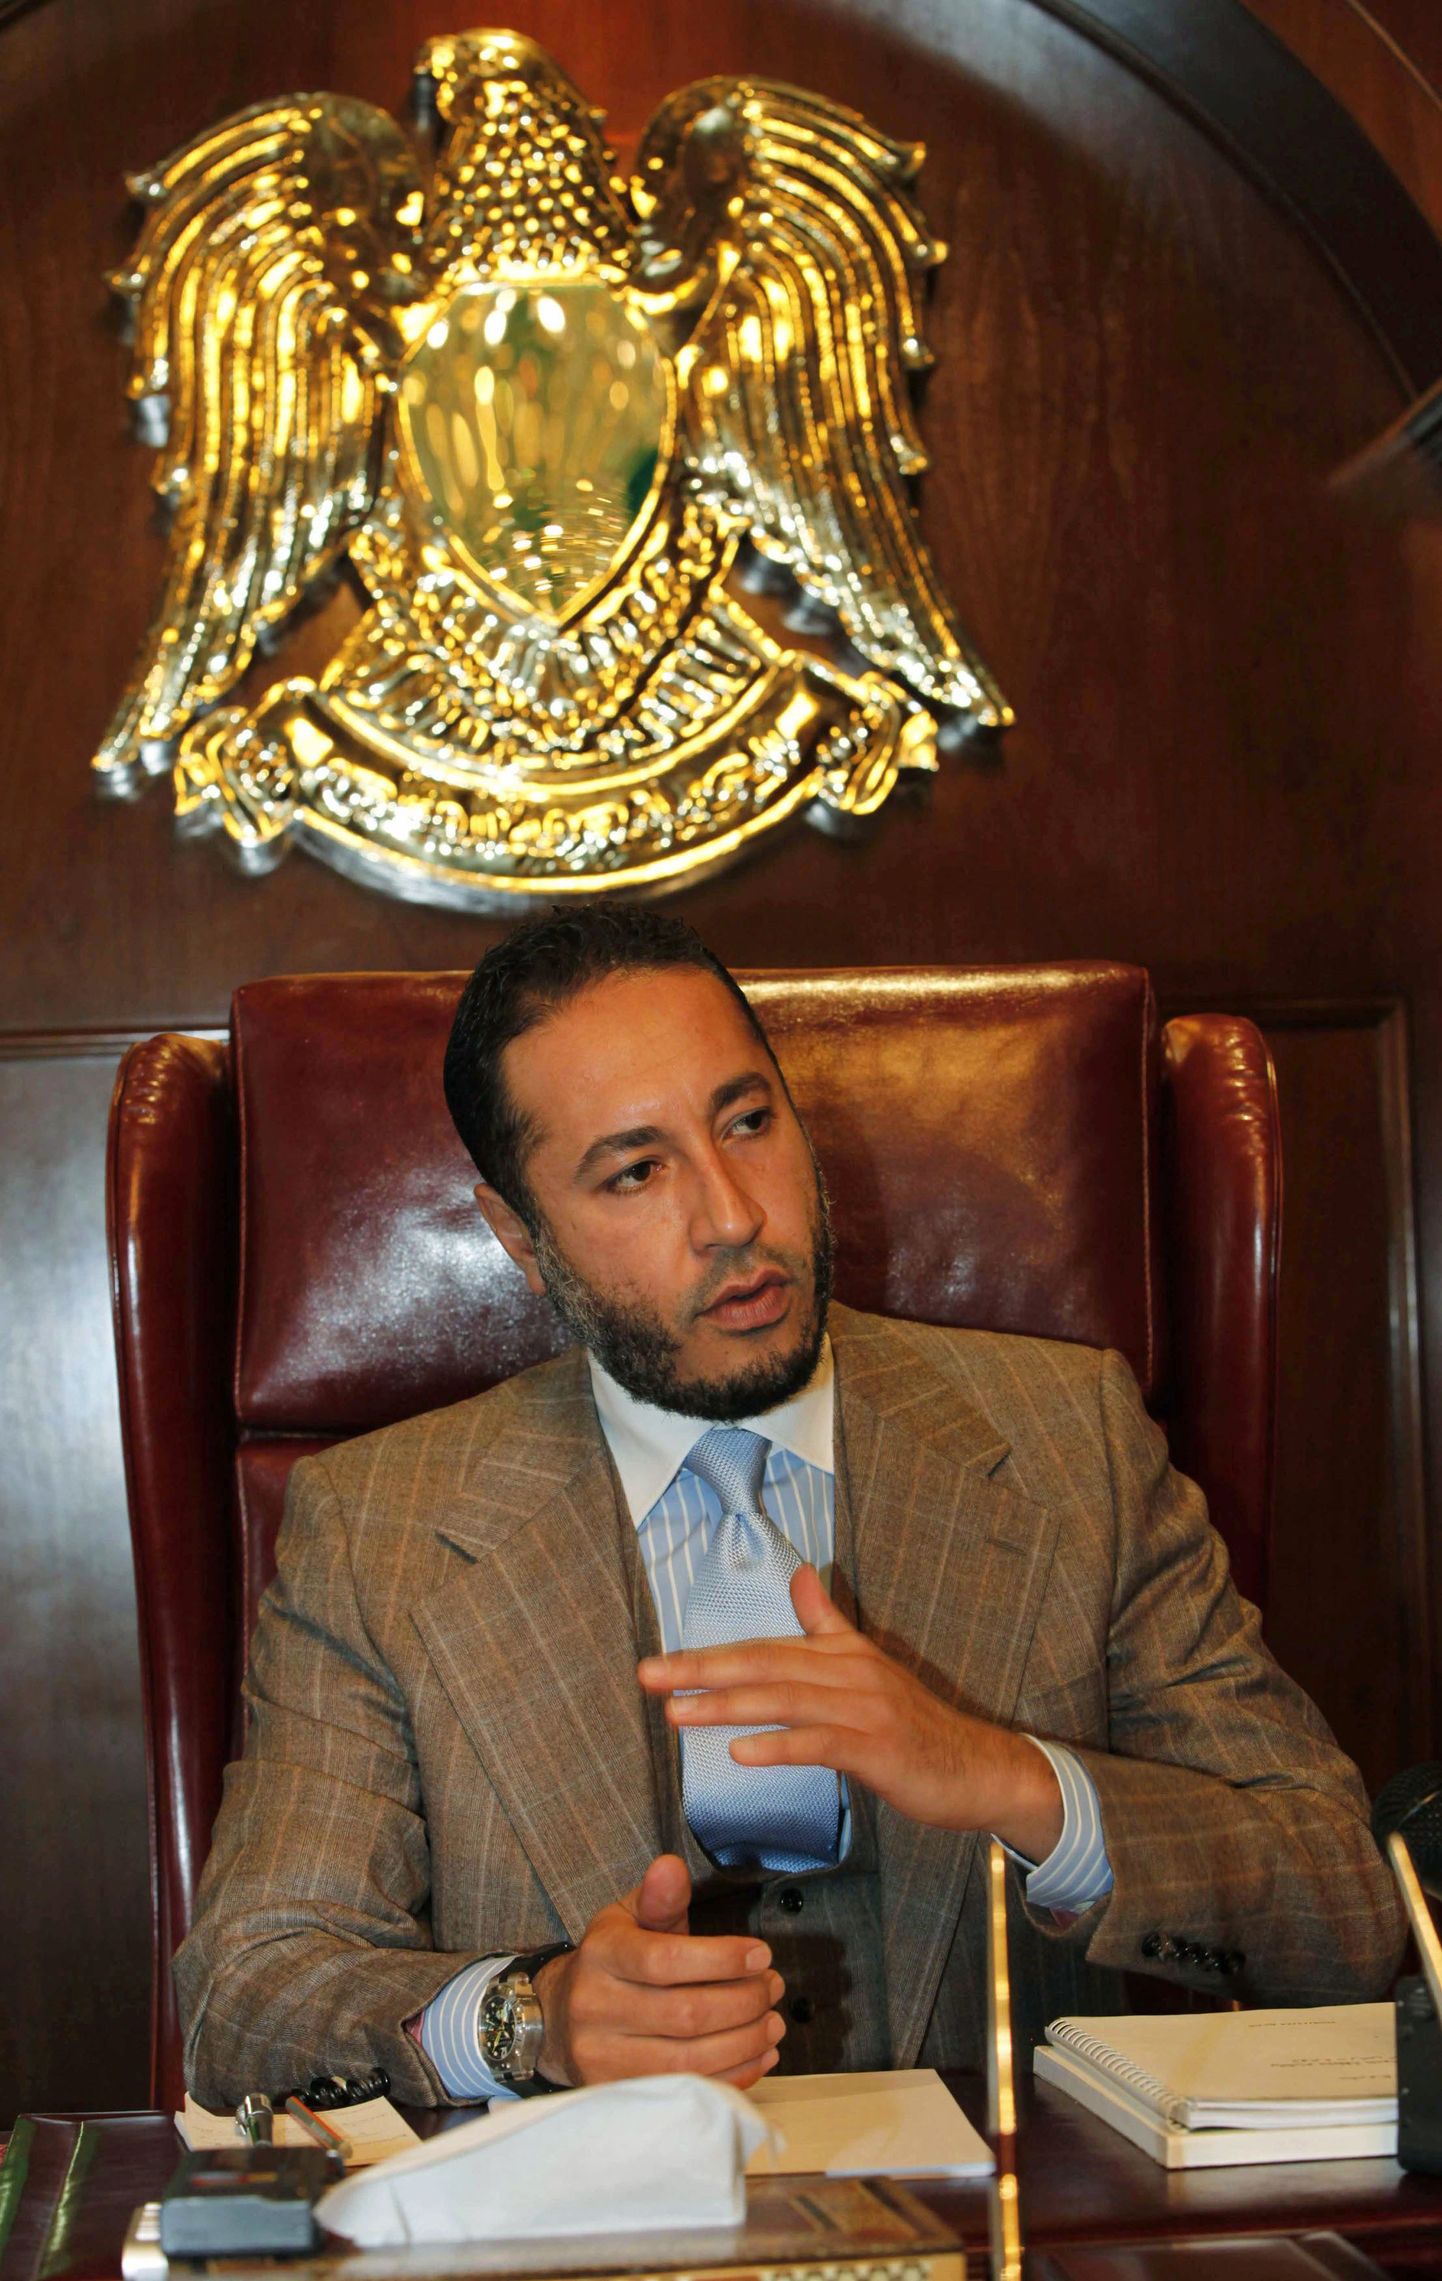 Al-Saadi Gaddafi